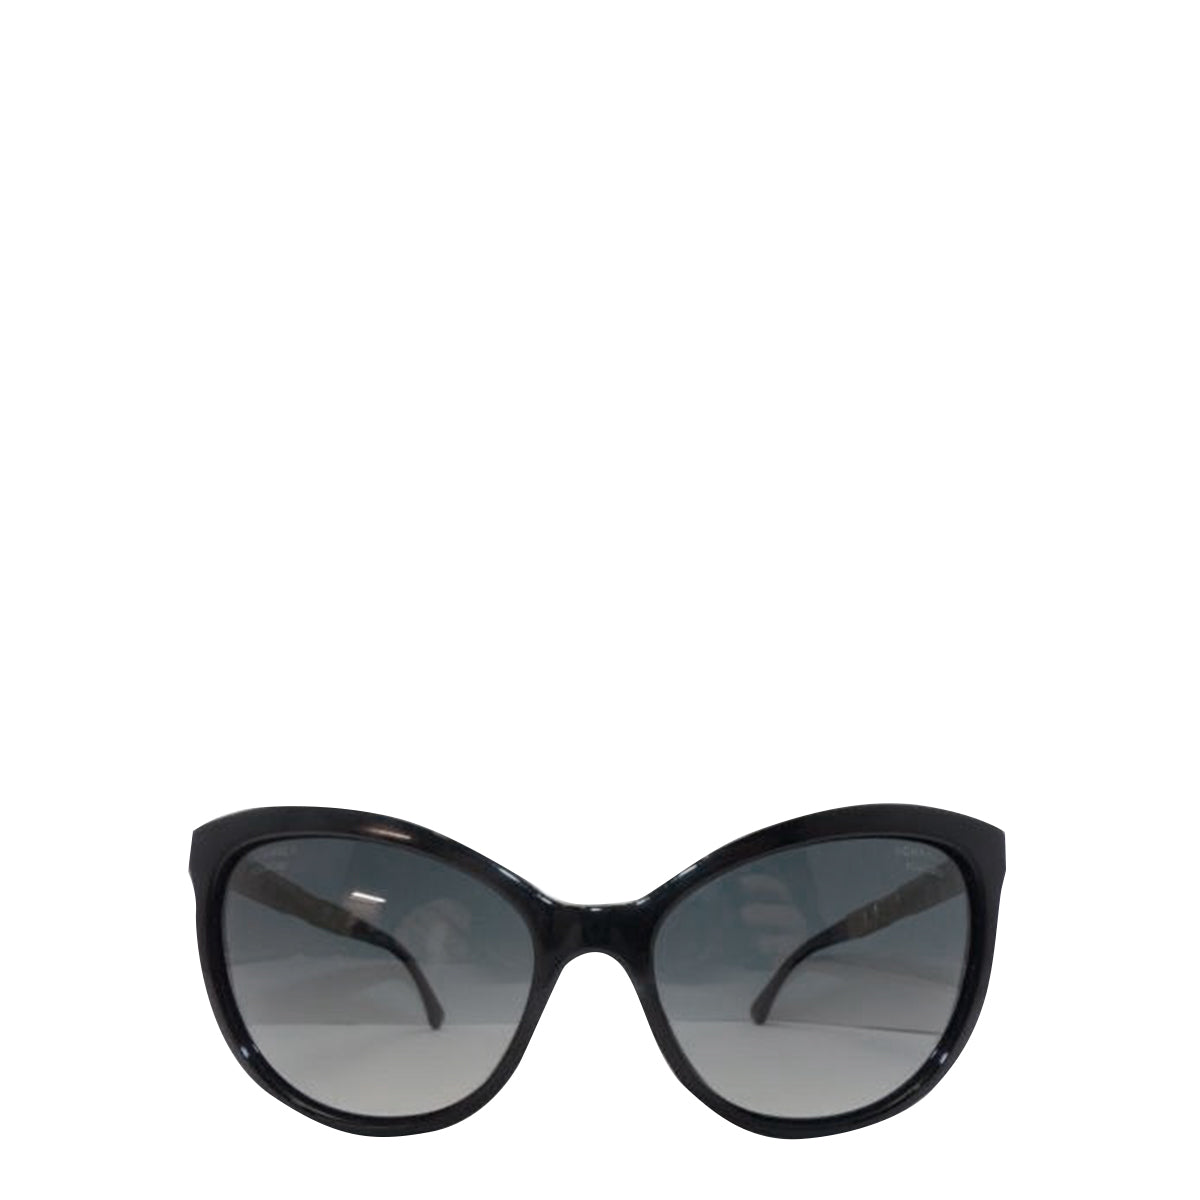 Oculos Chanel Polarized Preto